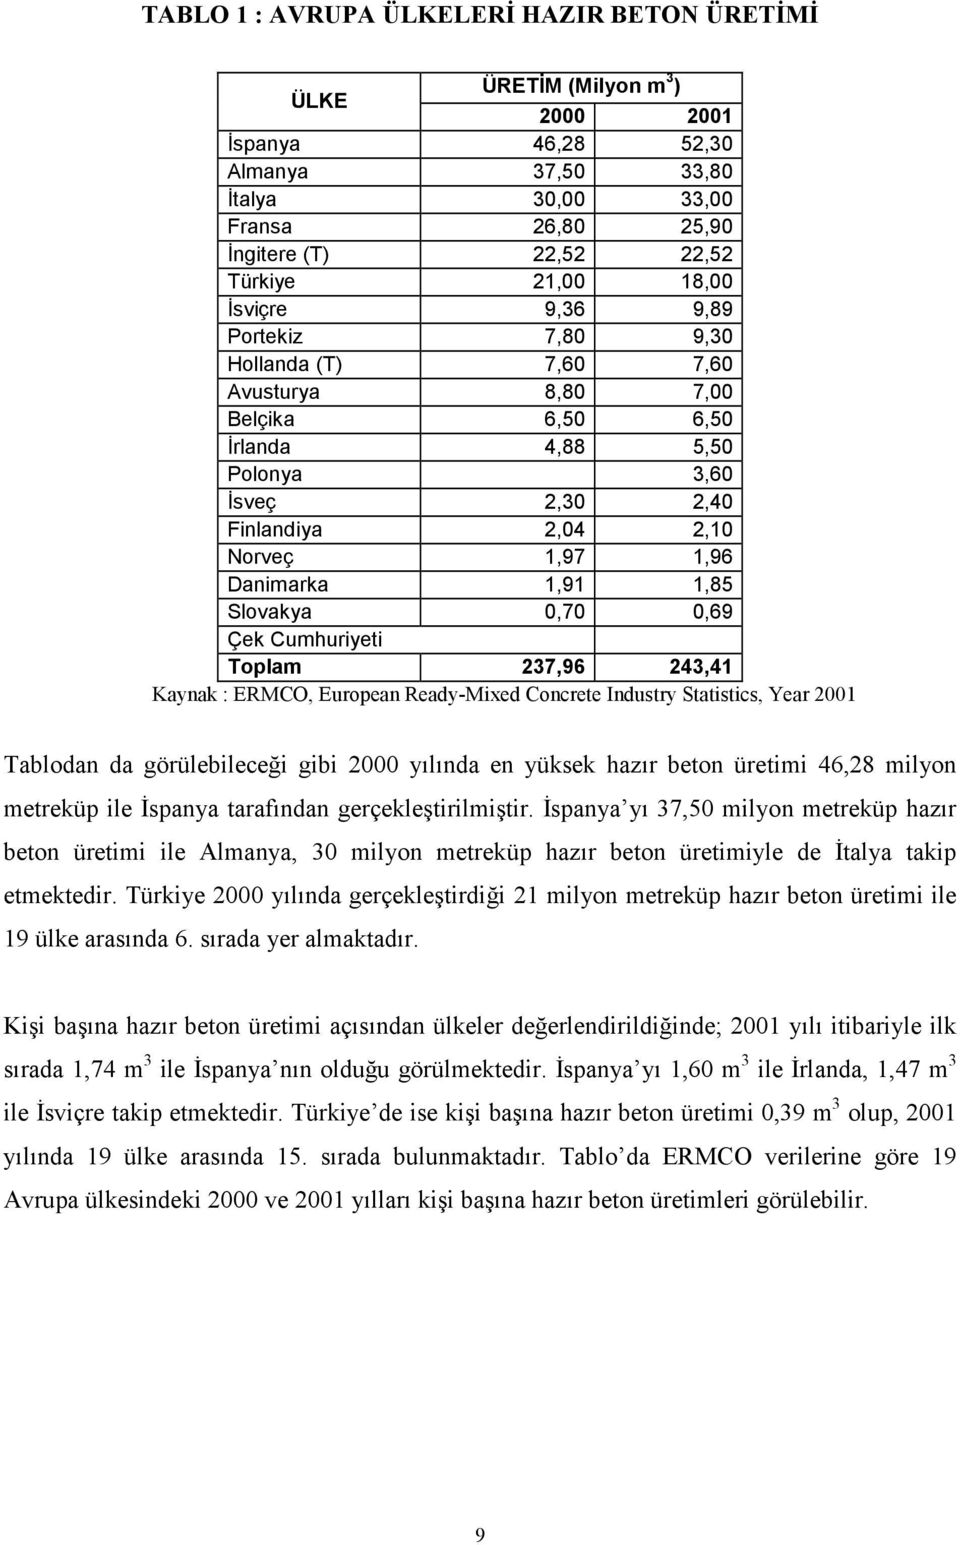 1,91 1,85 Slovakya 0,70 0,69 Çek Cumhuriyeti Toplam 237,96 243,41 Kaynak : ERMCO, European Ready-Mixed Concrete Industry Statistics, Year 2001 Tablodan da görülebileceği gibi 2000 yılında en yüksek